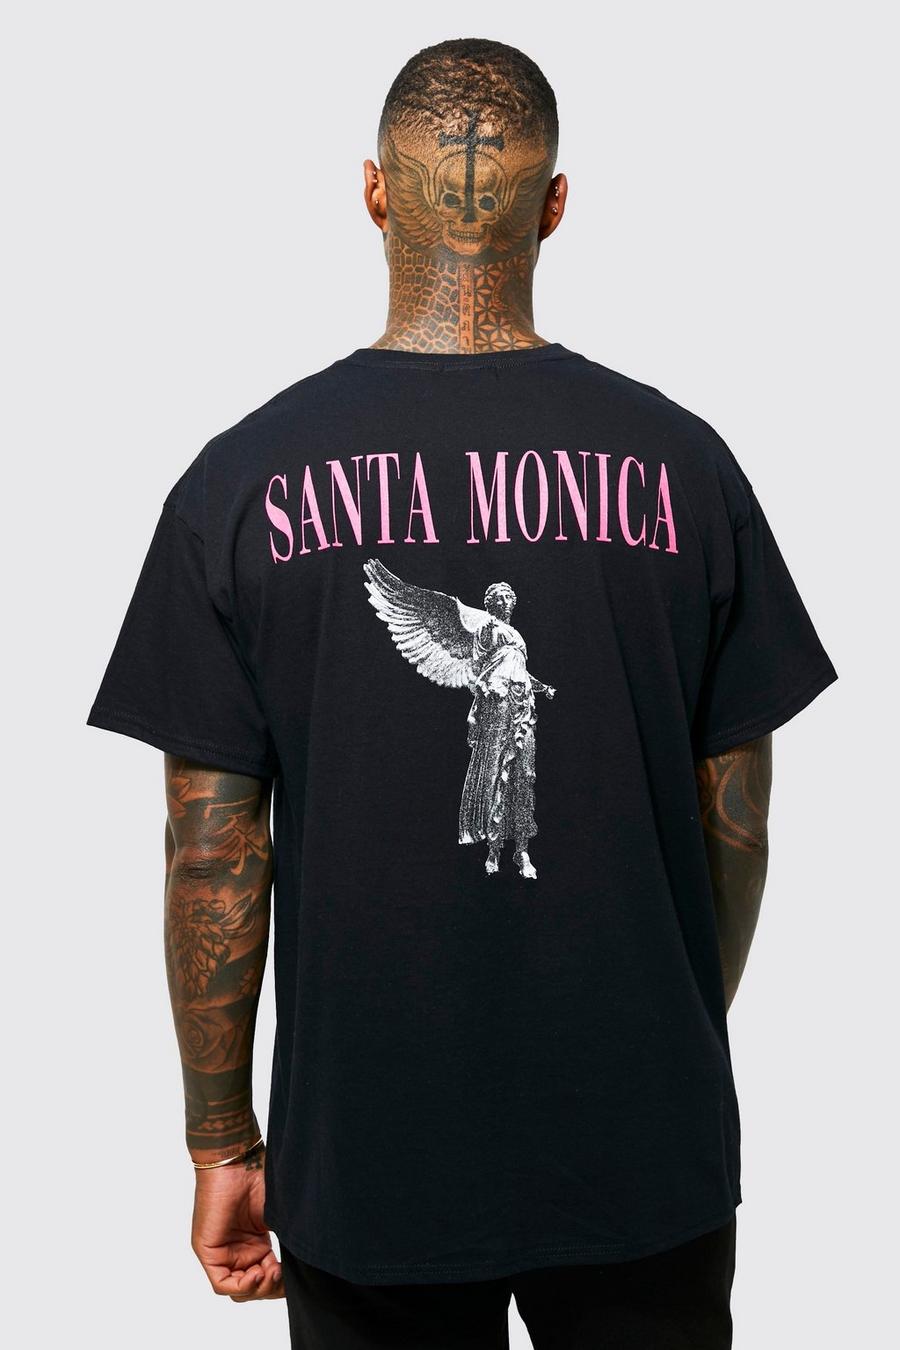 שחור nero טישרט אוברסייז עם כיתוב Santa Monica והדפס גרפי של פסל